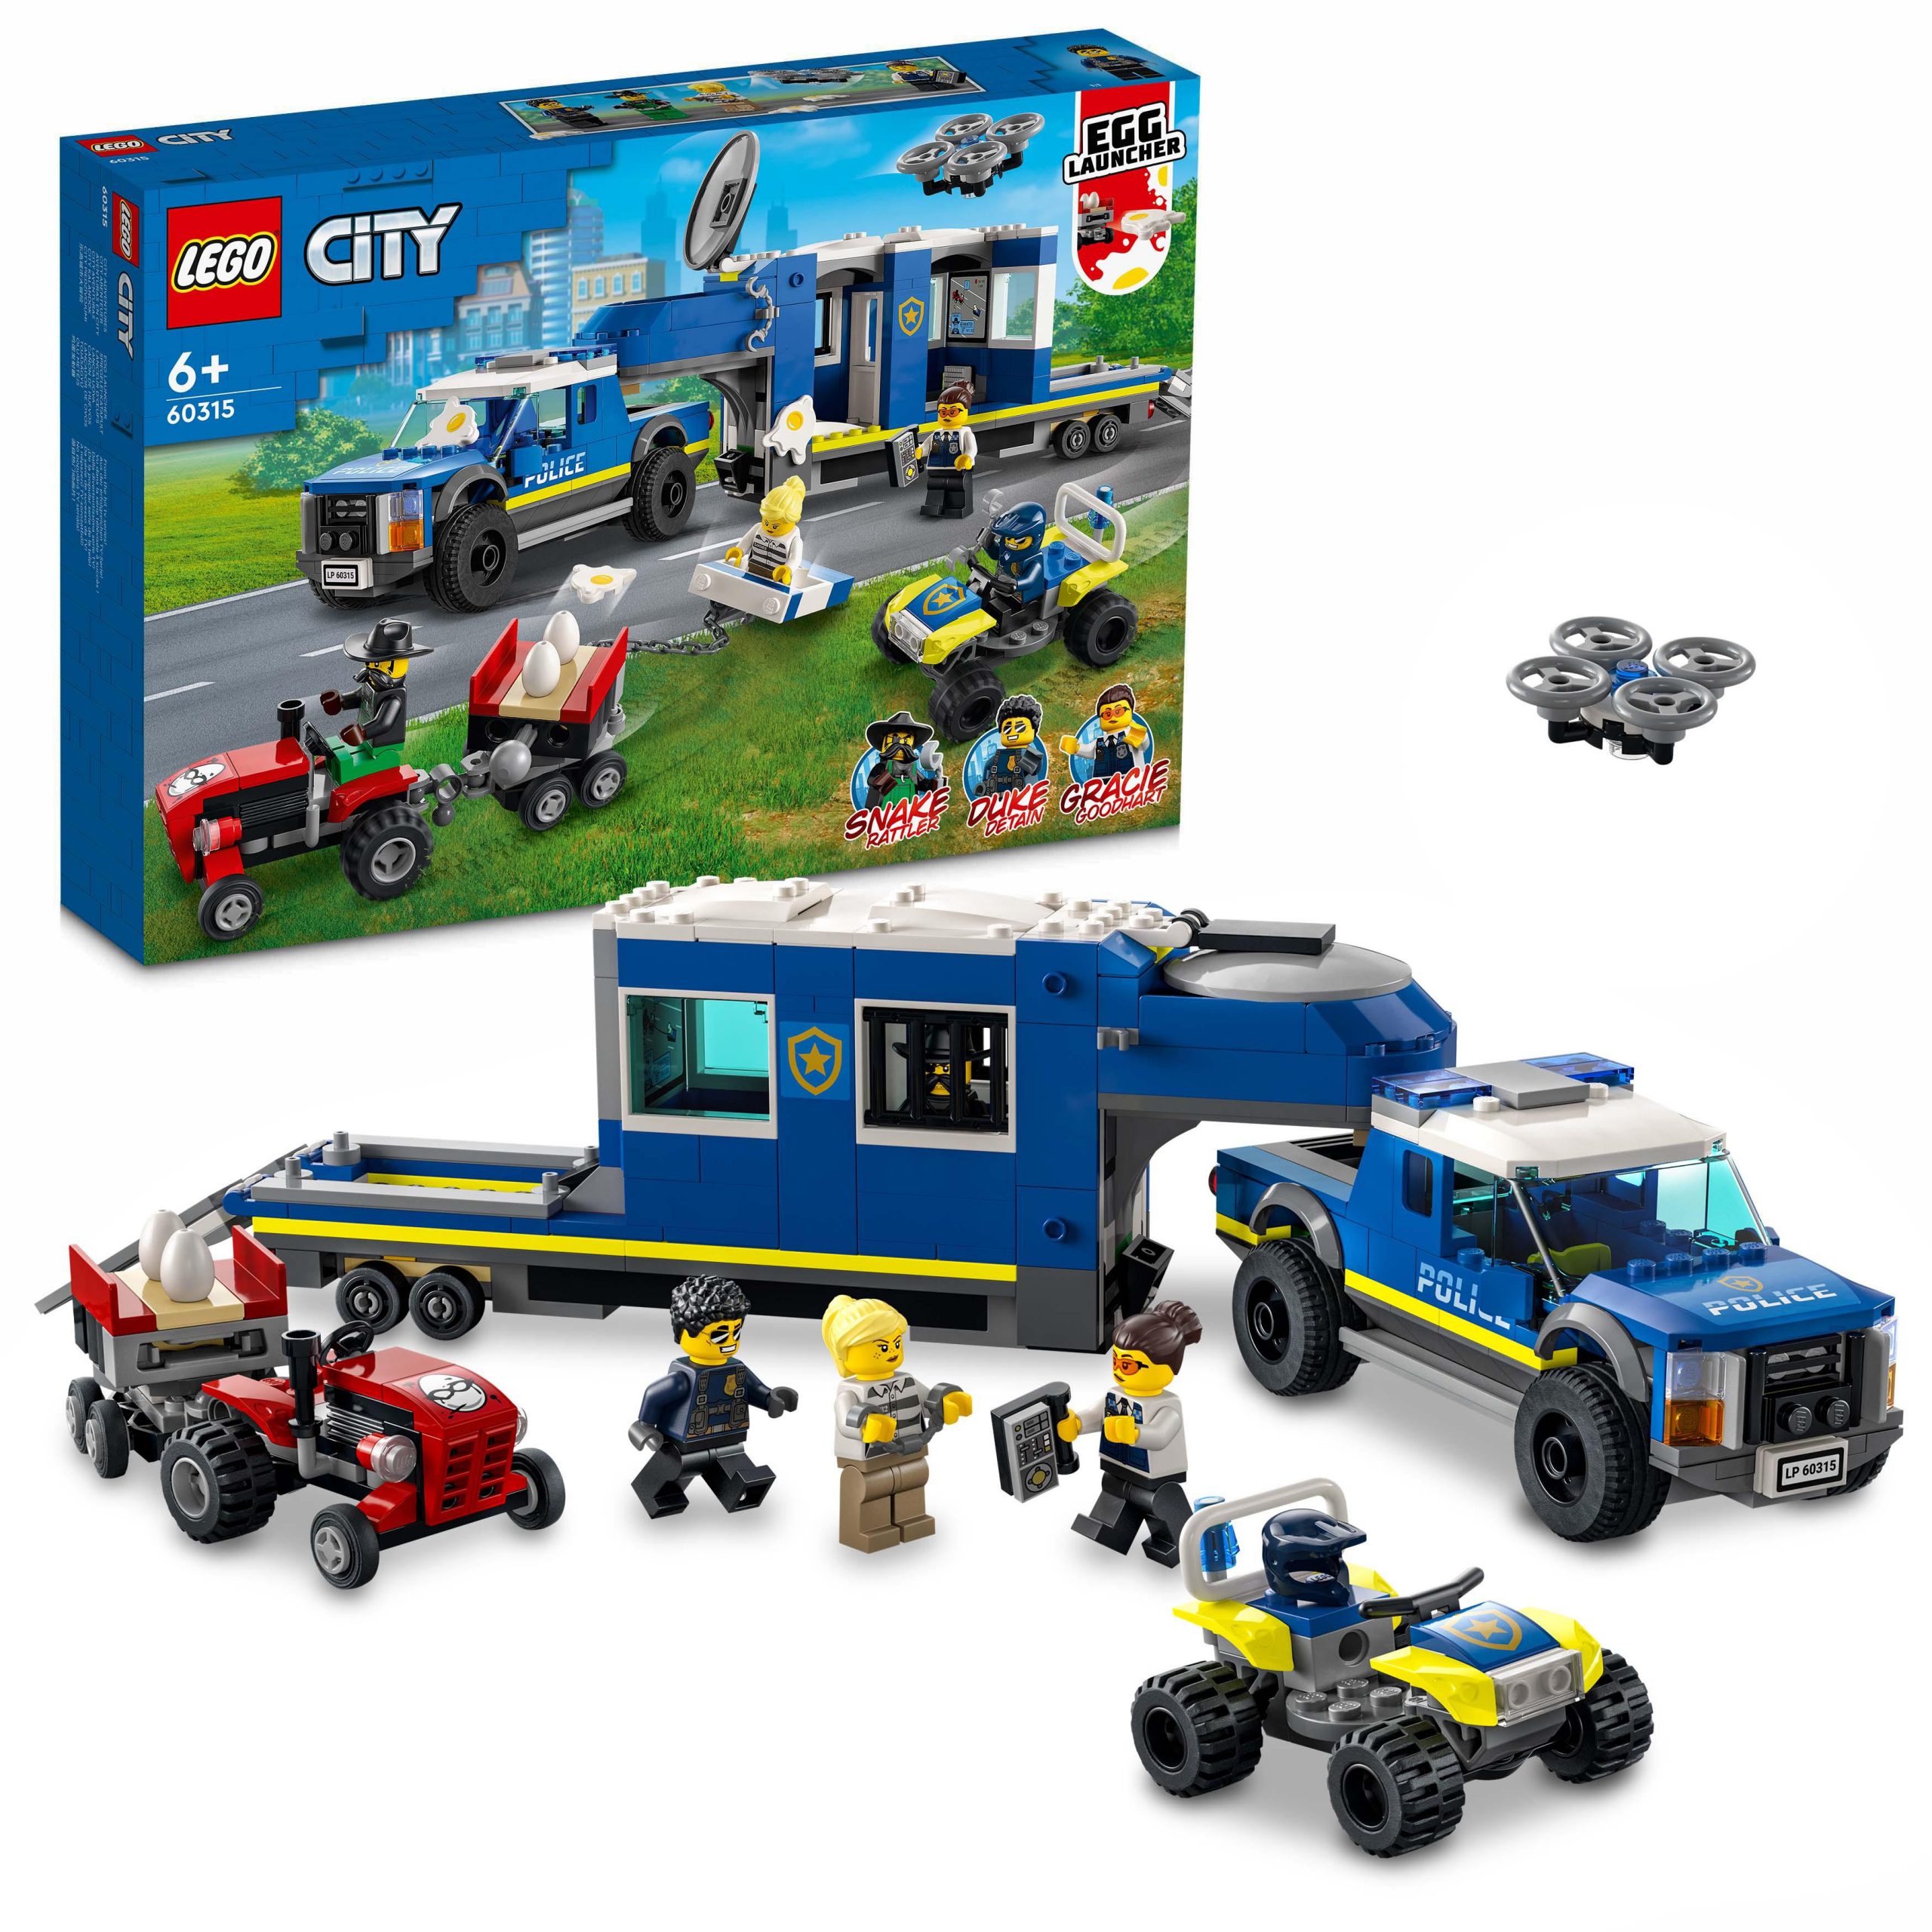 Lego city police camion centro di comando della polizia, atv, drone, 4  minifigure e trattore giocattolo, idea regalo, 60315 - Toys Center